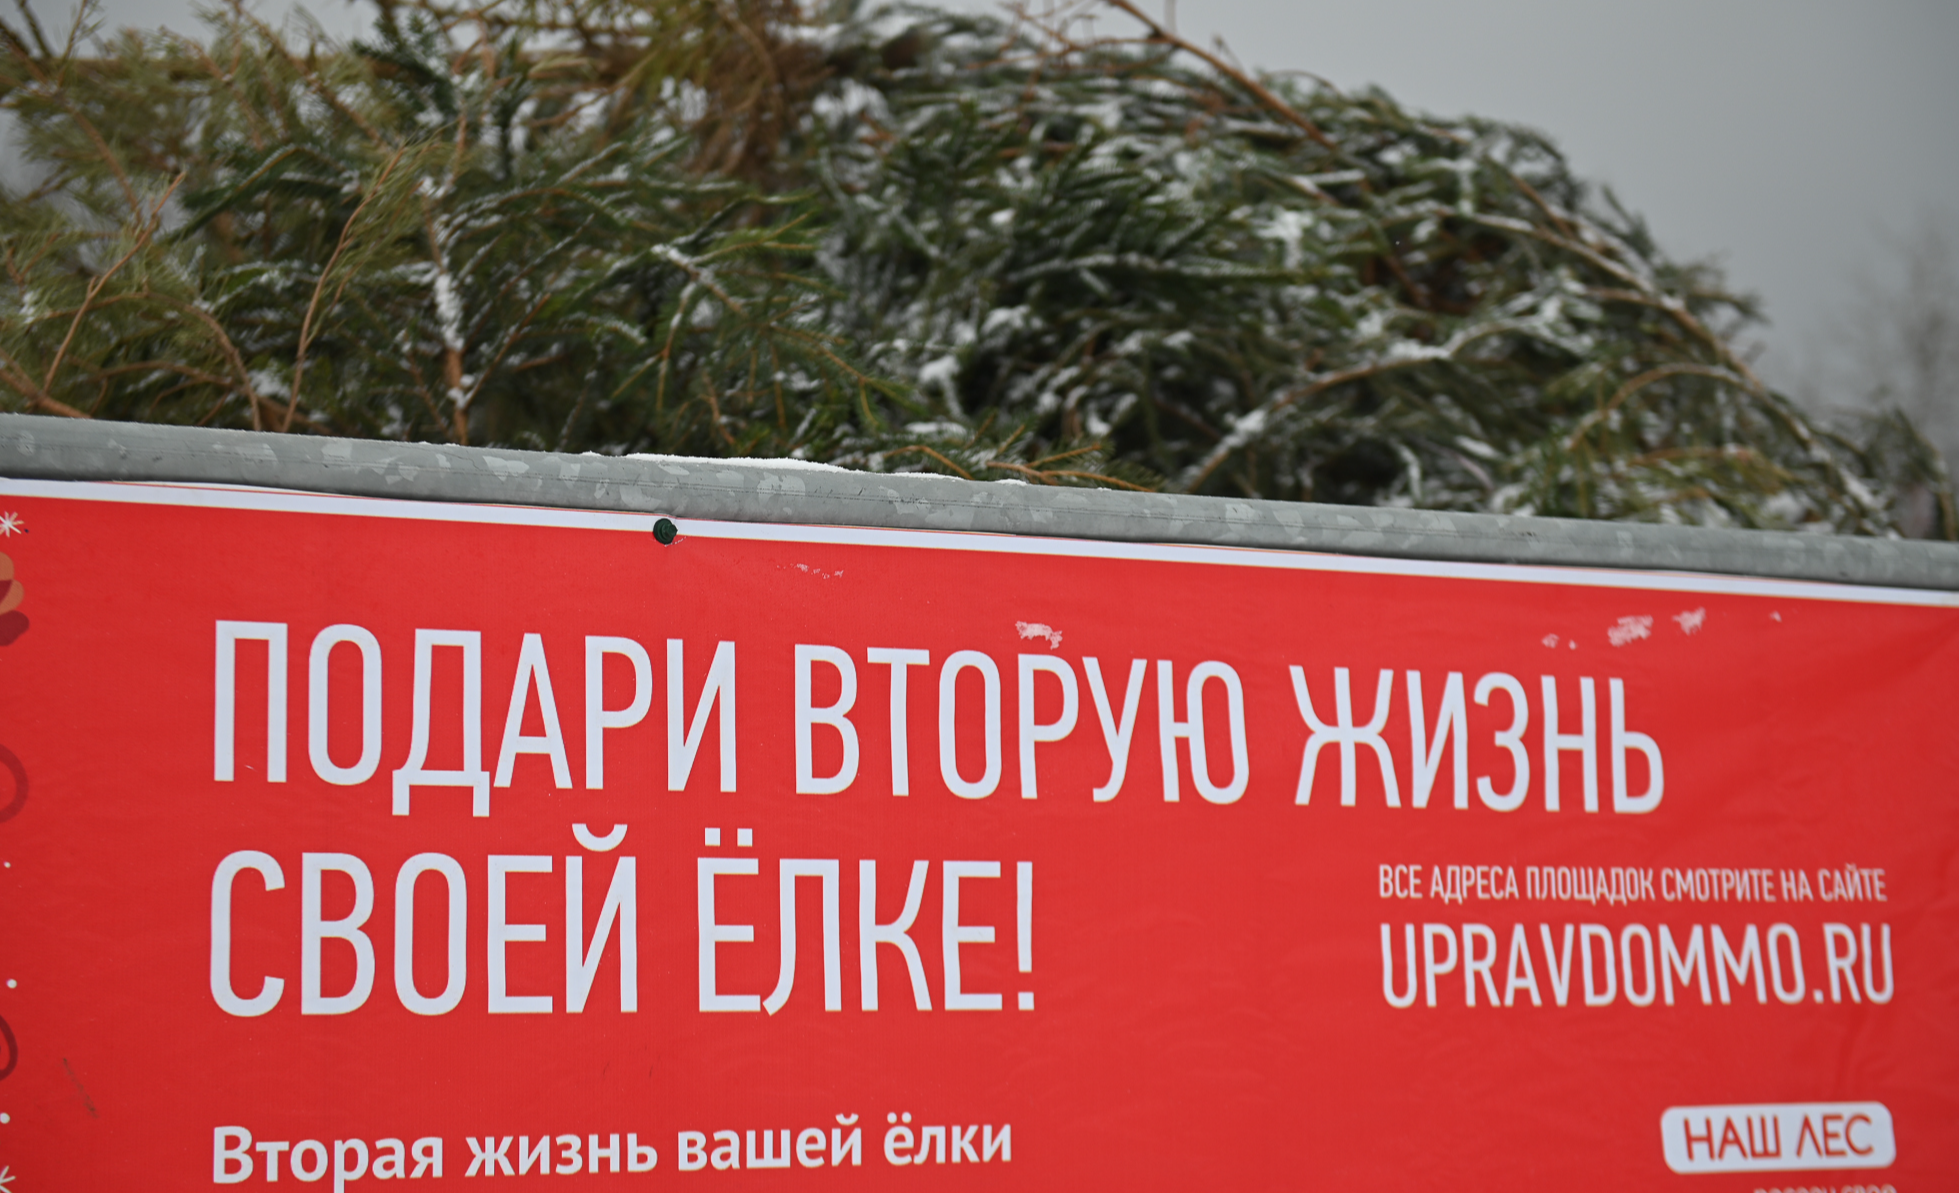 Подарить новогодней елке вторую жизнь можно на специальных площадках в Пушкинском округе